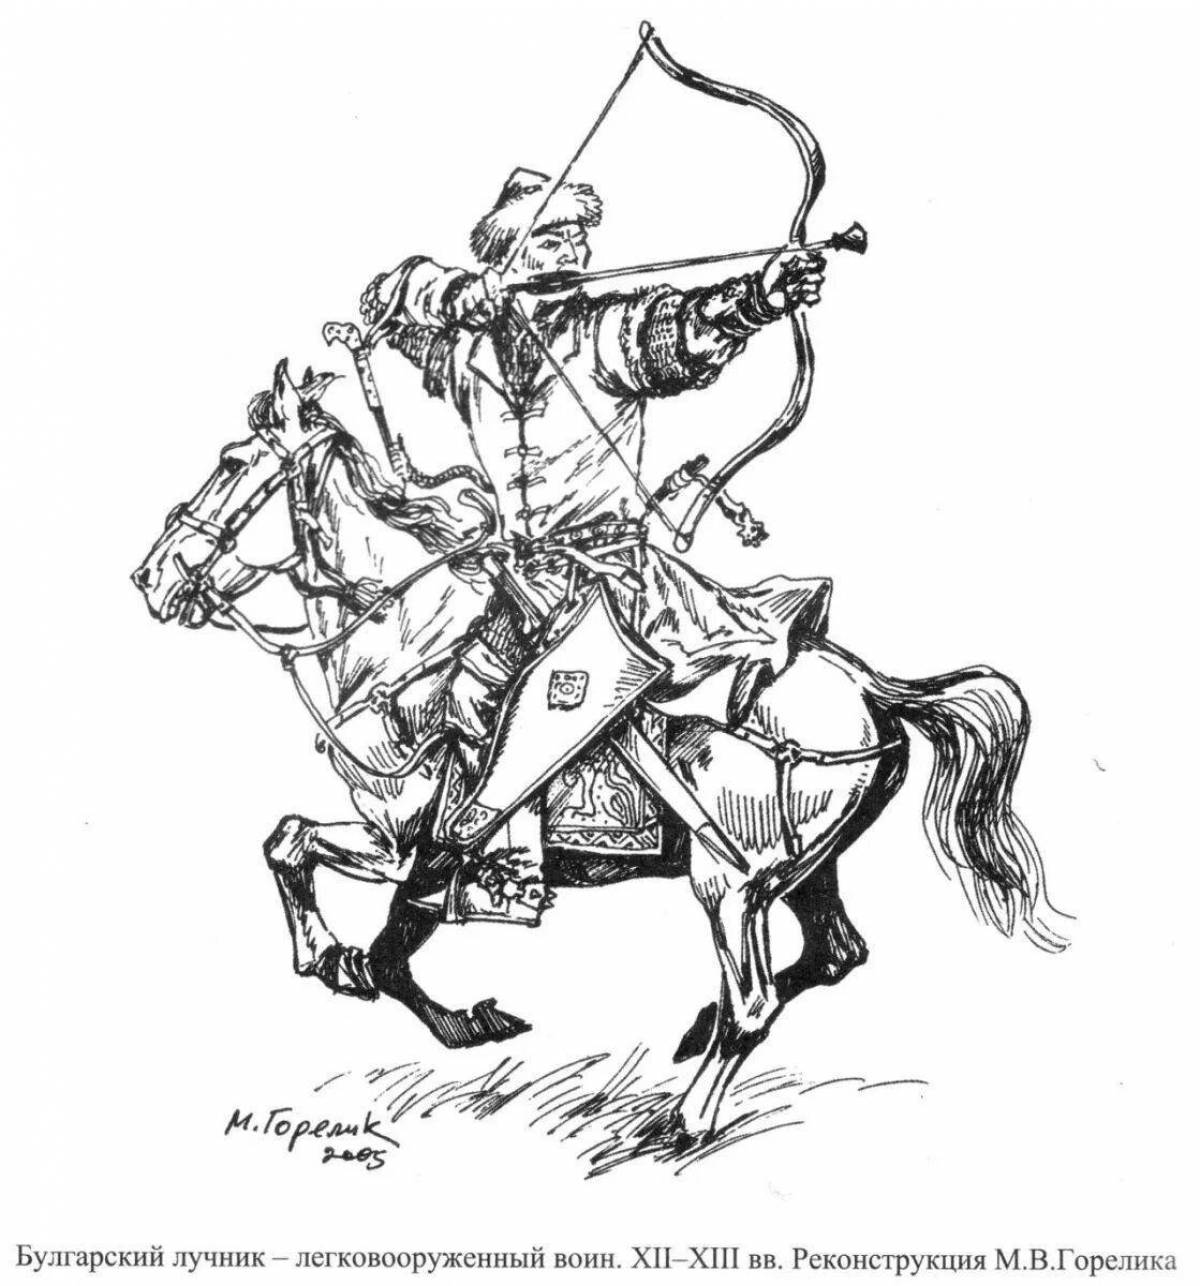 Mongol warrior #1